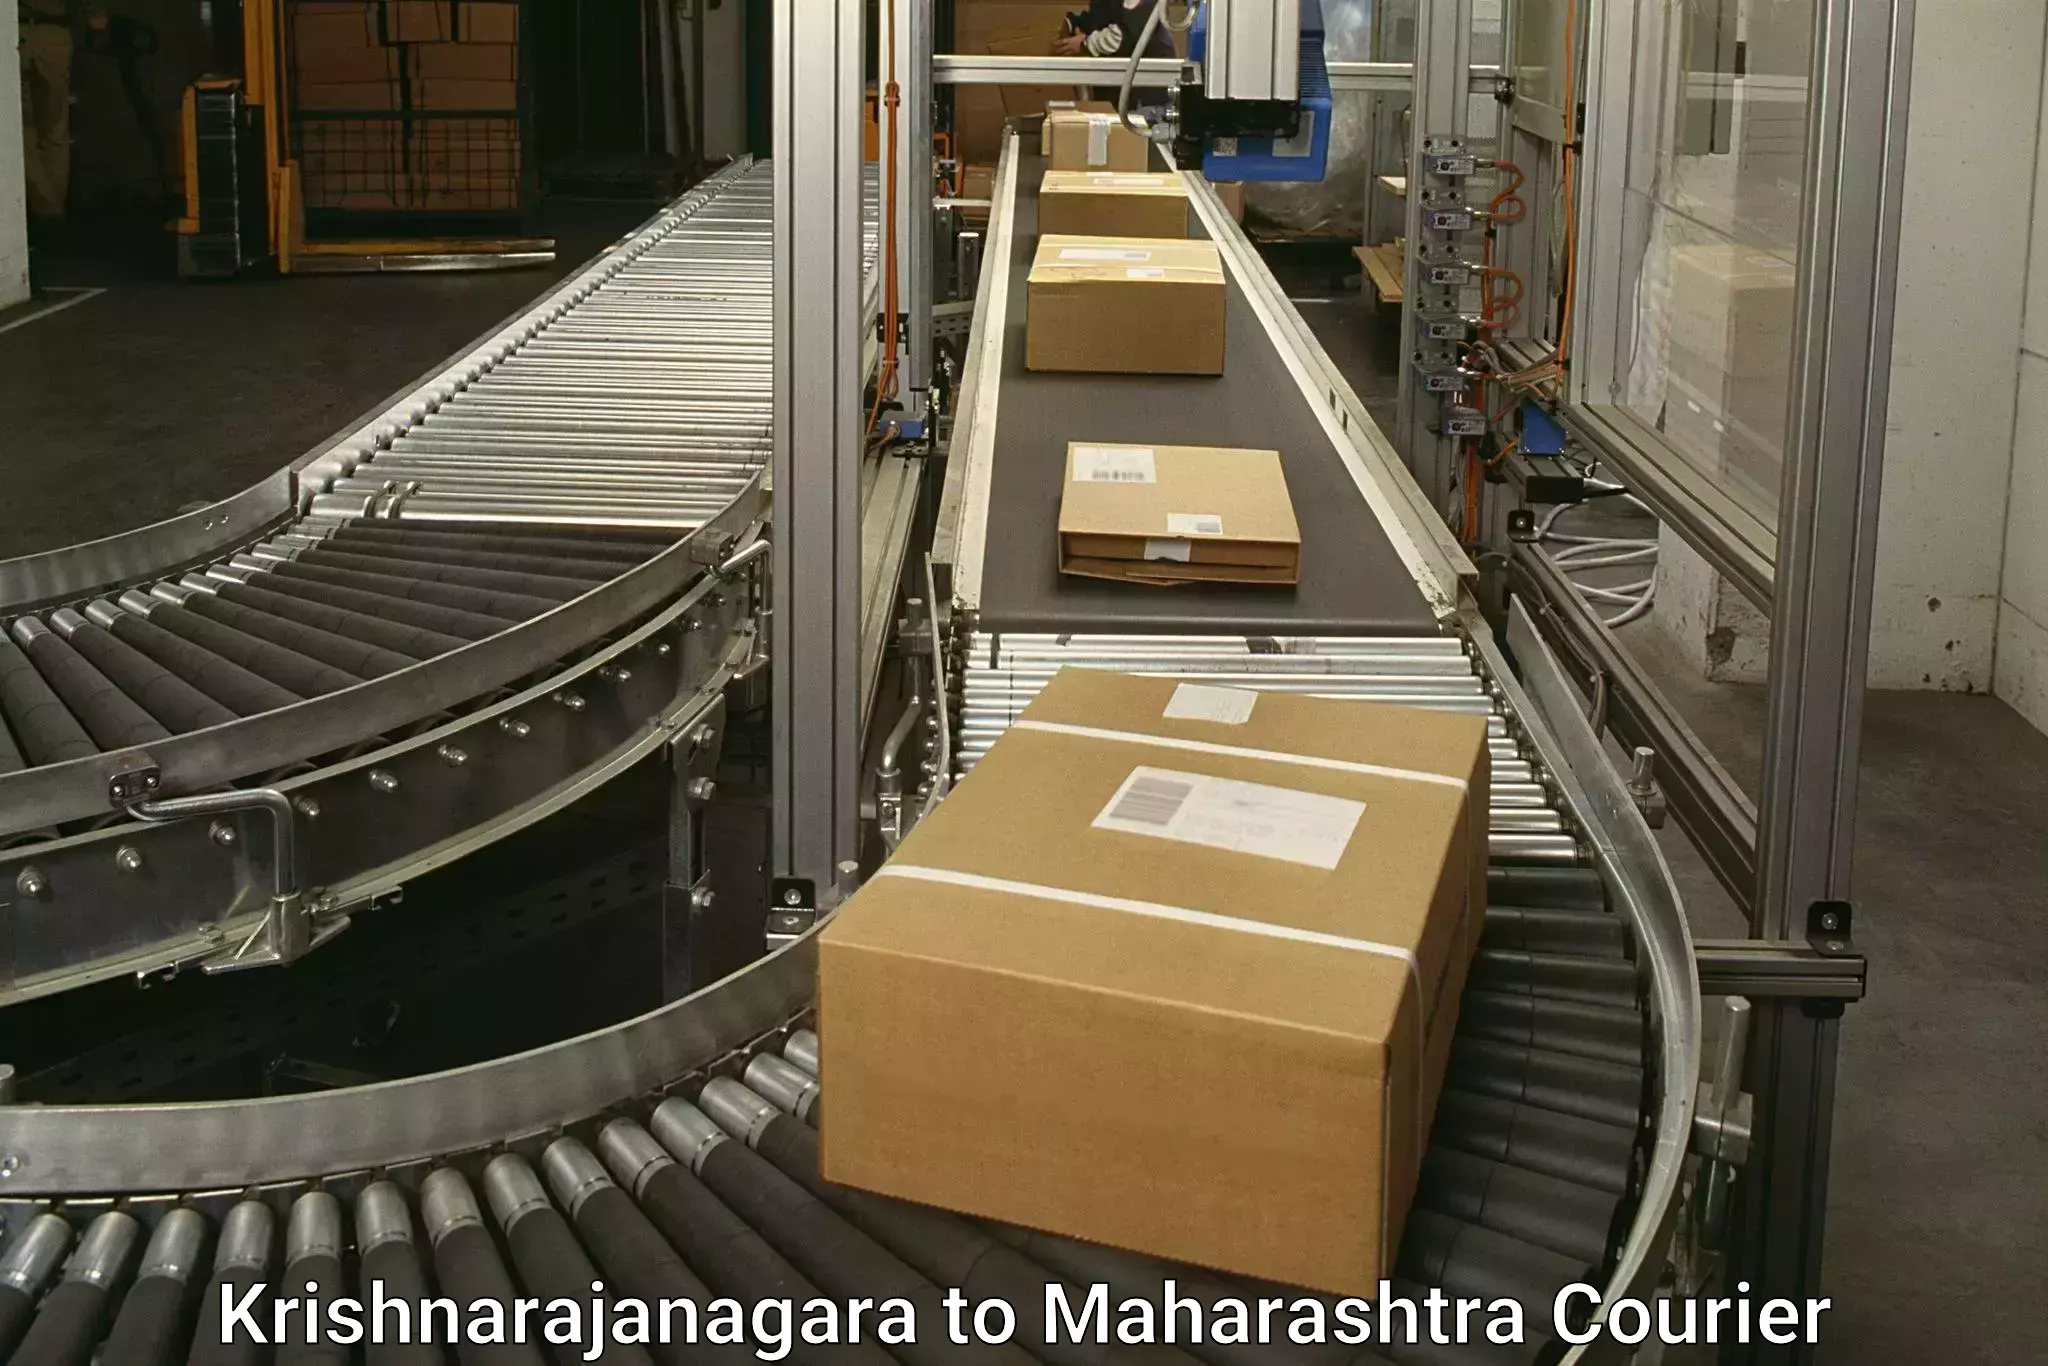 High-priority parcel service Krishnarajanagara to Nandurbar